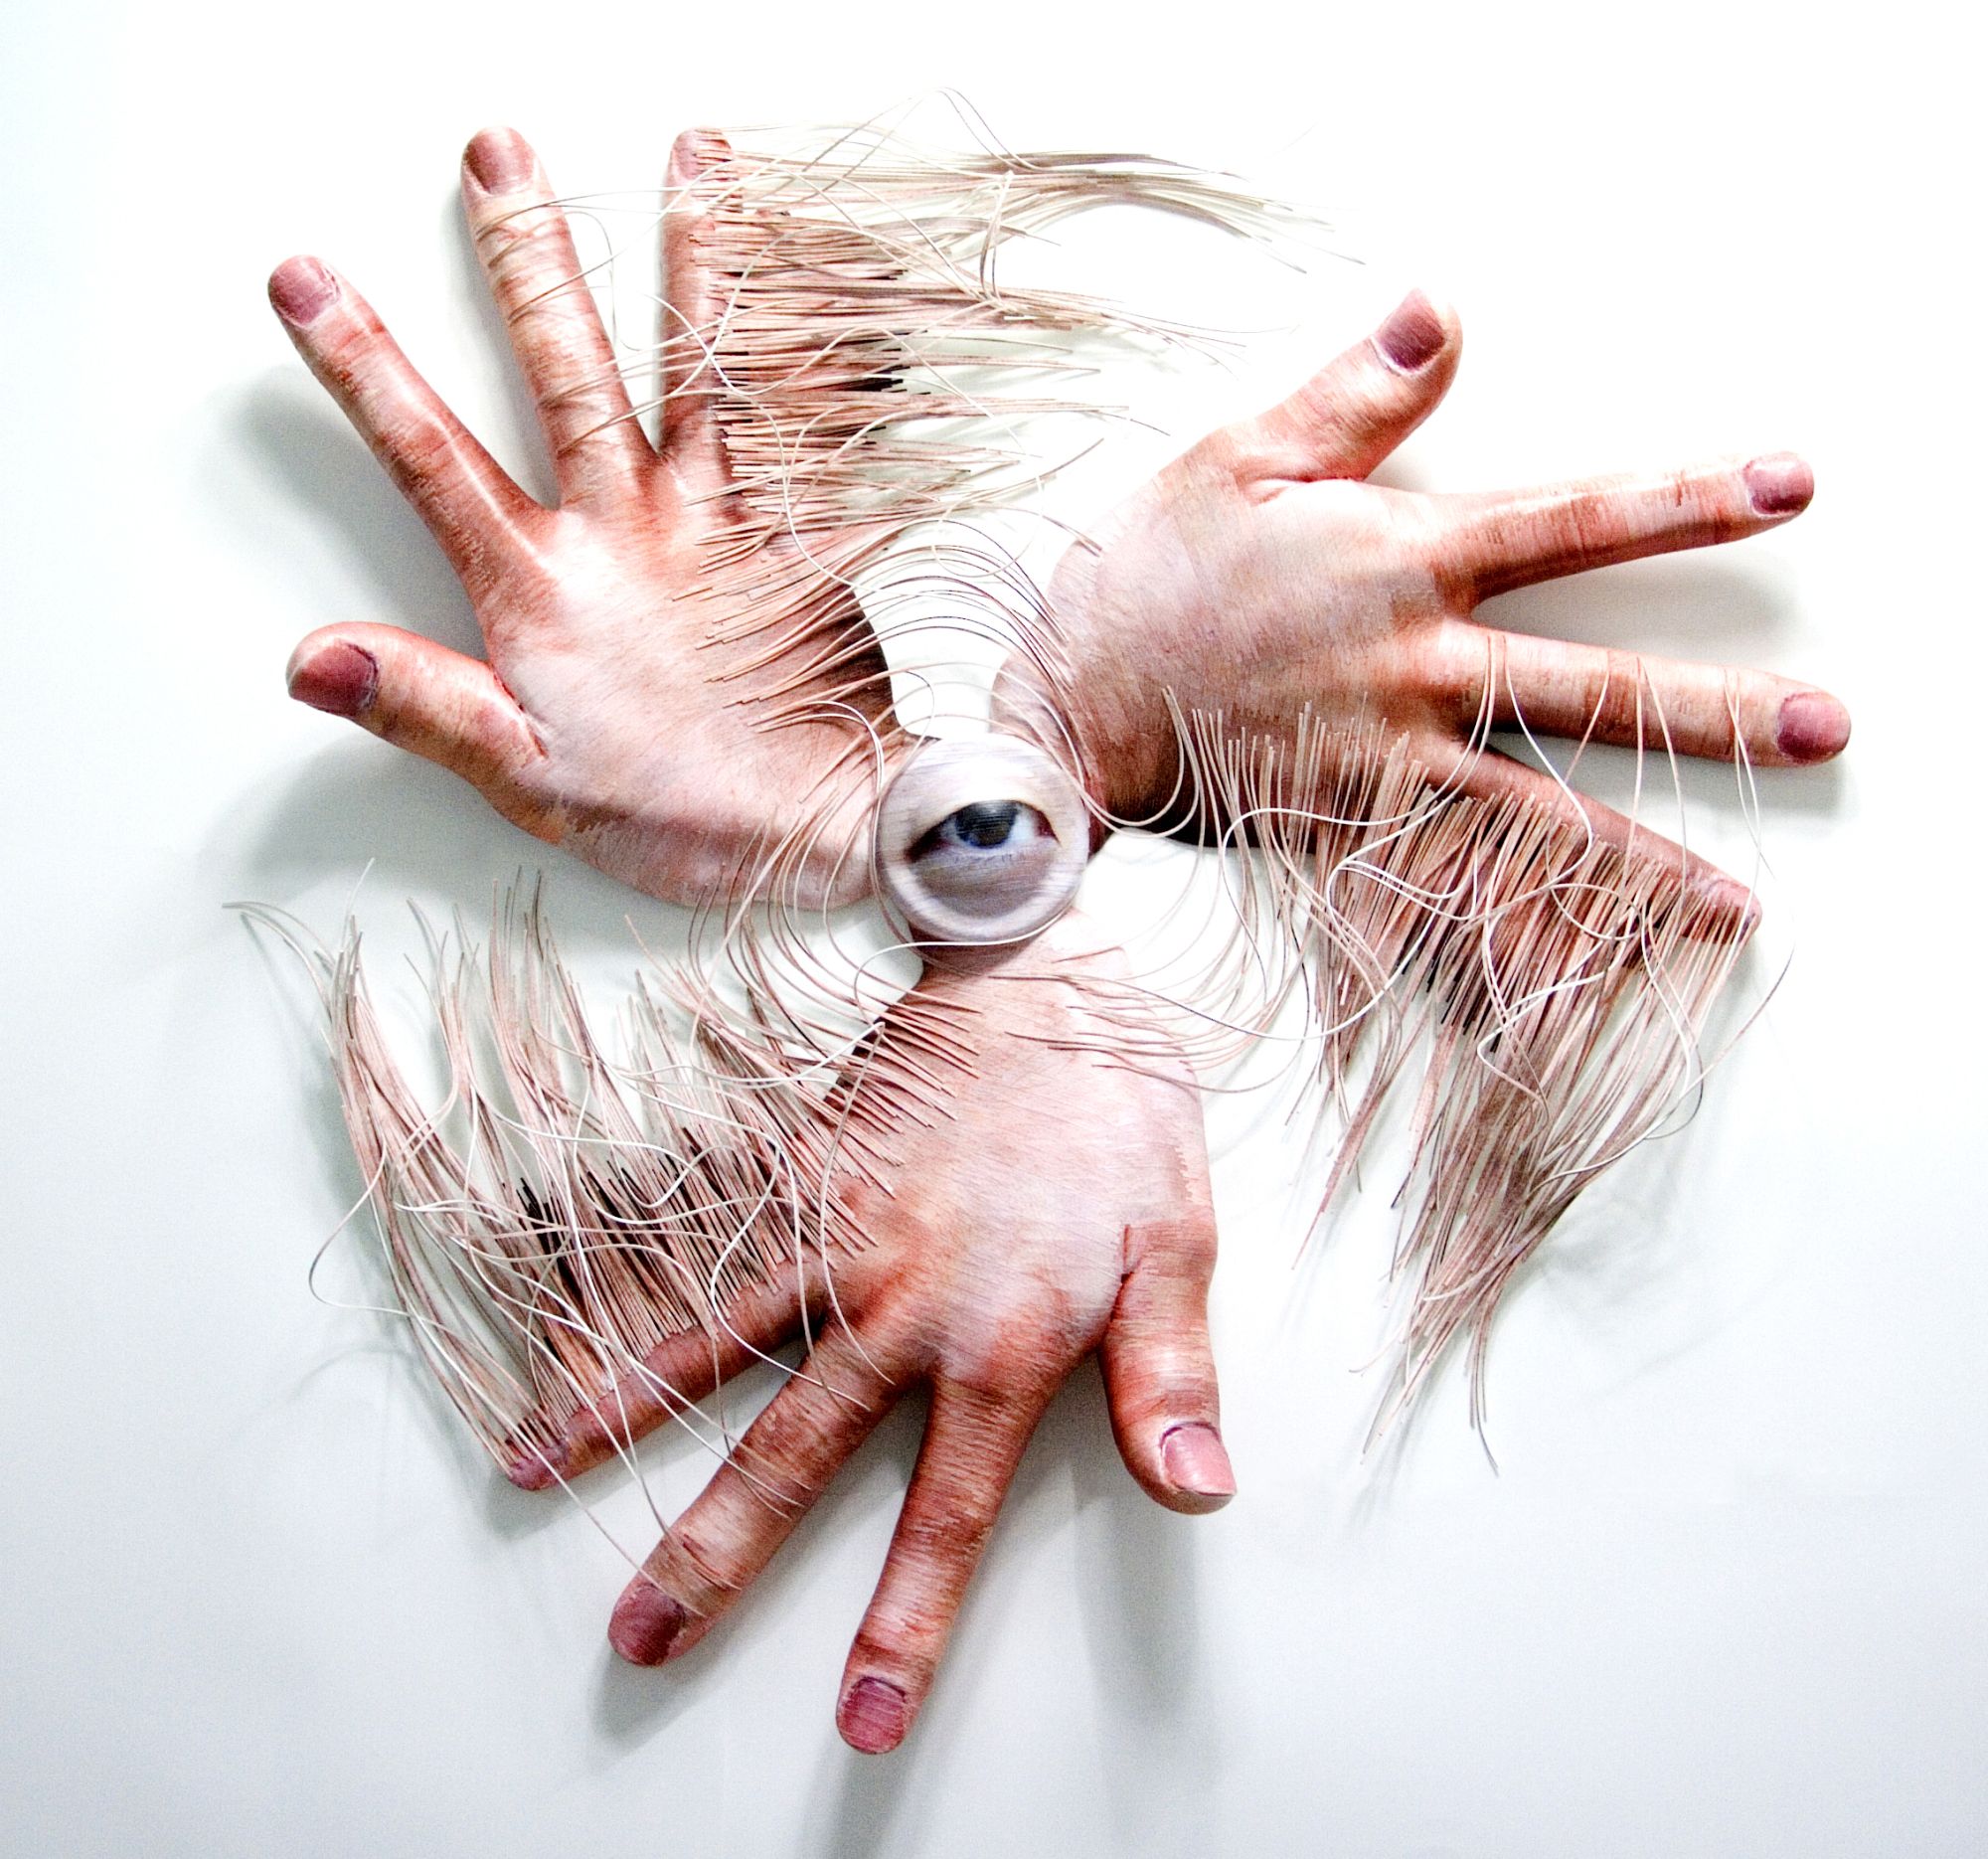 조합된 감각 프로젝트 - 손바람, Combined Sense Project - The Swish of a Hand